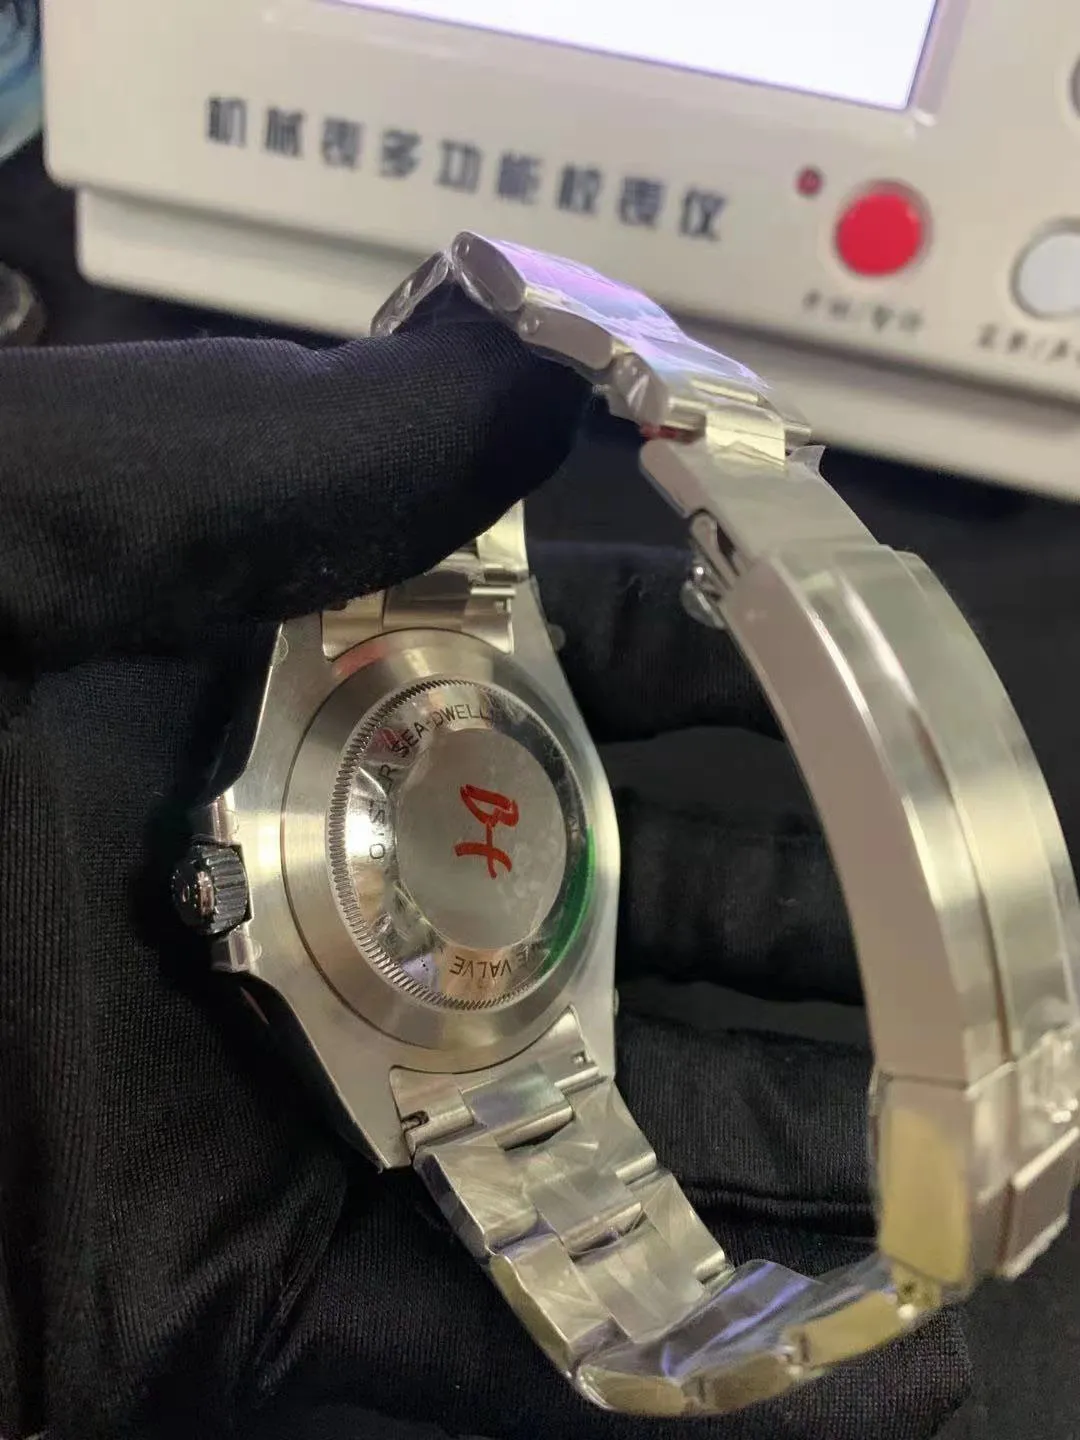 Nouveau produit de qualité supérieure BP Maker V5 Version 43mm R126660 céramique asie 2813 mouvement mécanique automatique montre pour hommes Watches190z